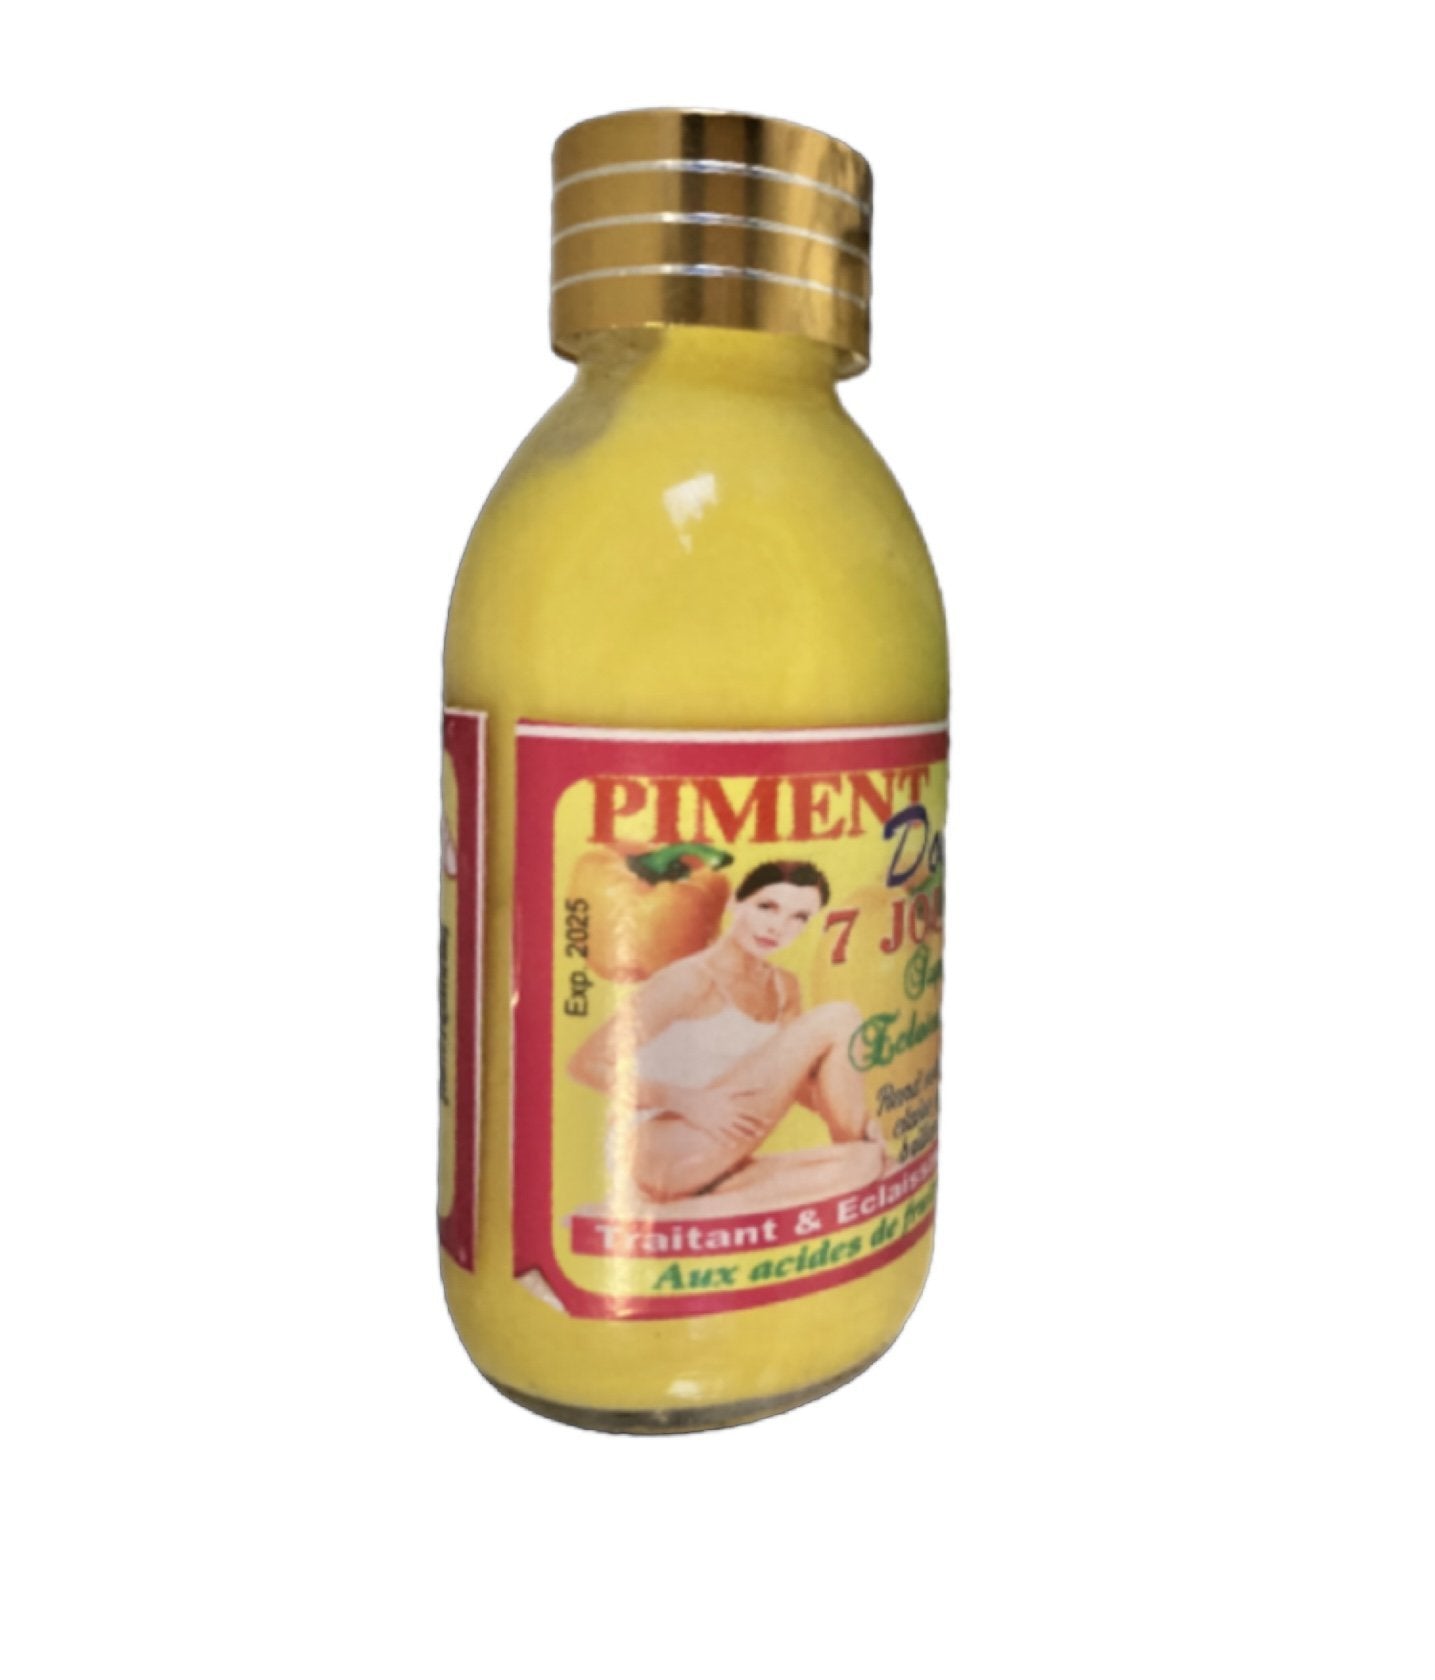 Doox 7 Days Super Lightening Oil with Fruit Acid Rapid Action | Piment Doox - YLKgood